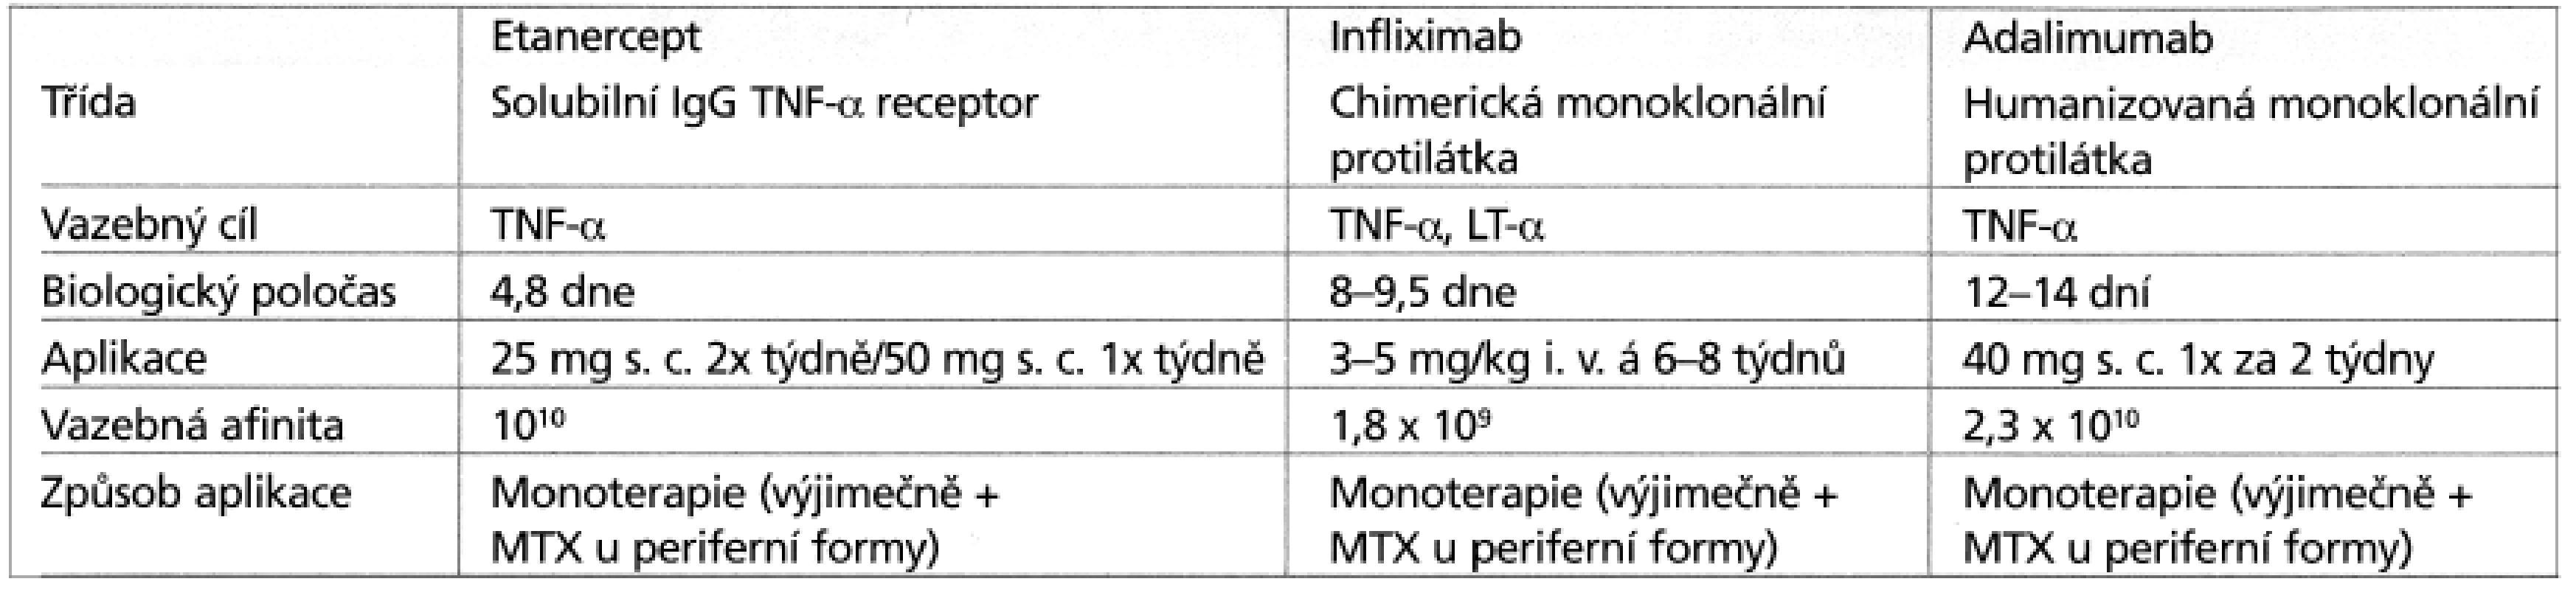 Farmakokinetika inhibitorů TNF-α